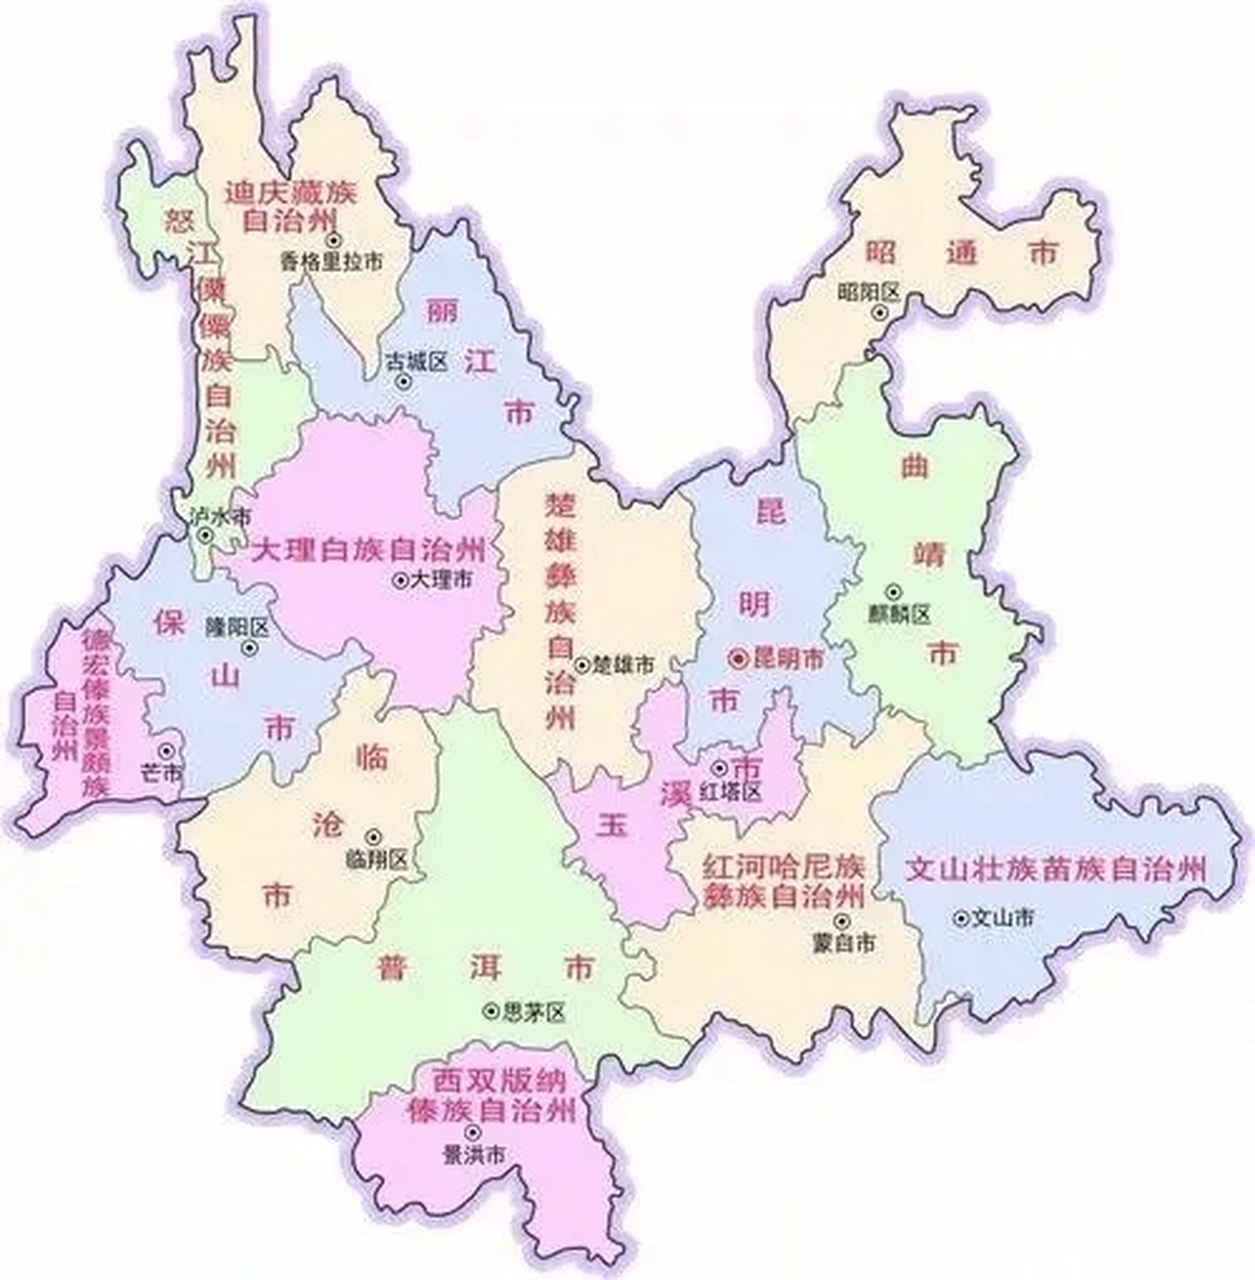 云南省行政区划遐想: 一,楚雄直接把自治州撤掉,从楚雄市和南华县划出